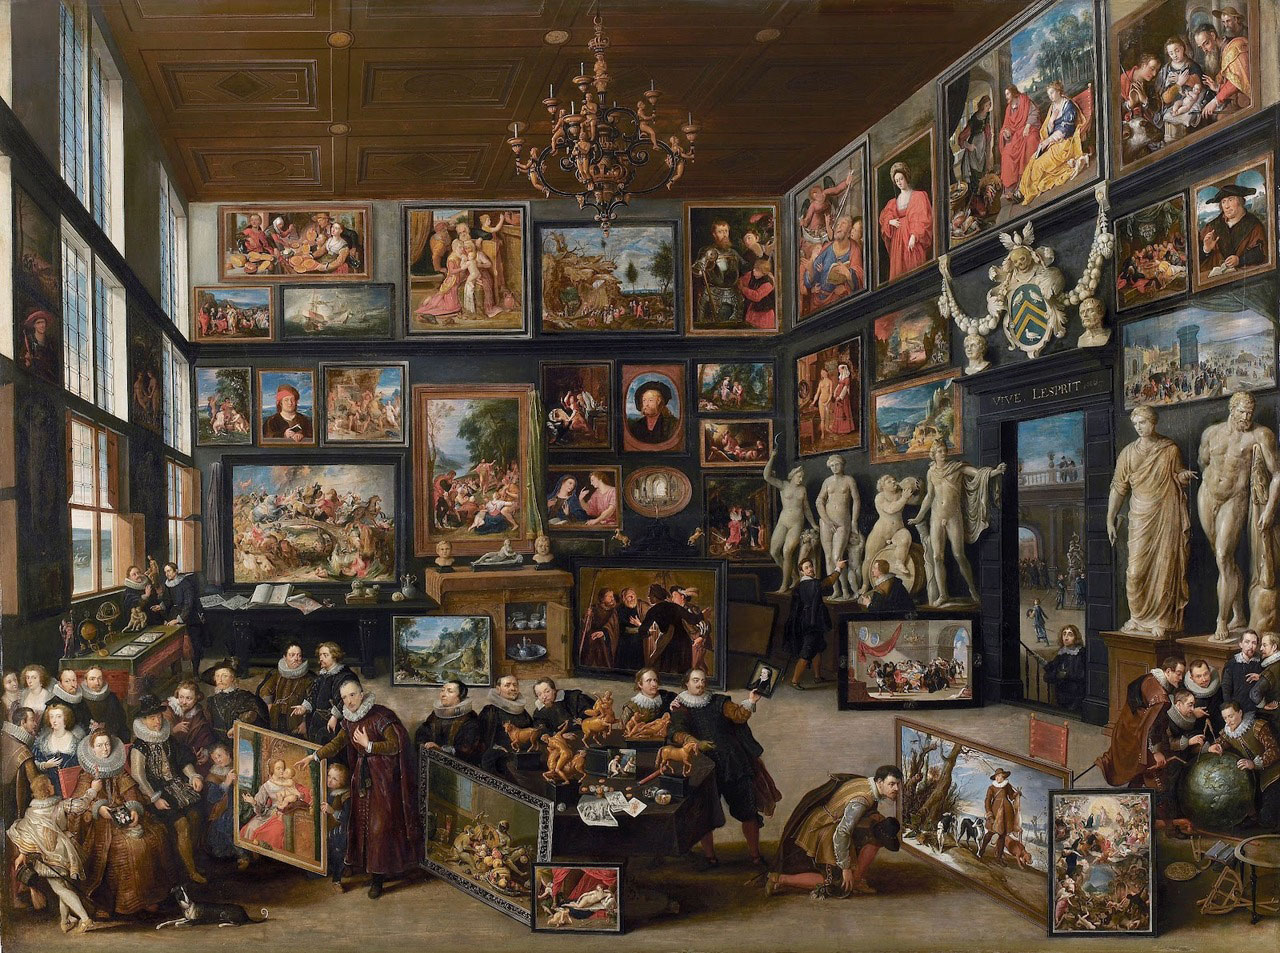 El gabinete de pinturas de Cornelis van der Geest durante la visita de los archiduques, Willem van Haecht, 1628 